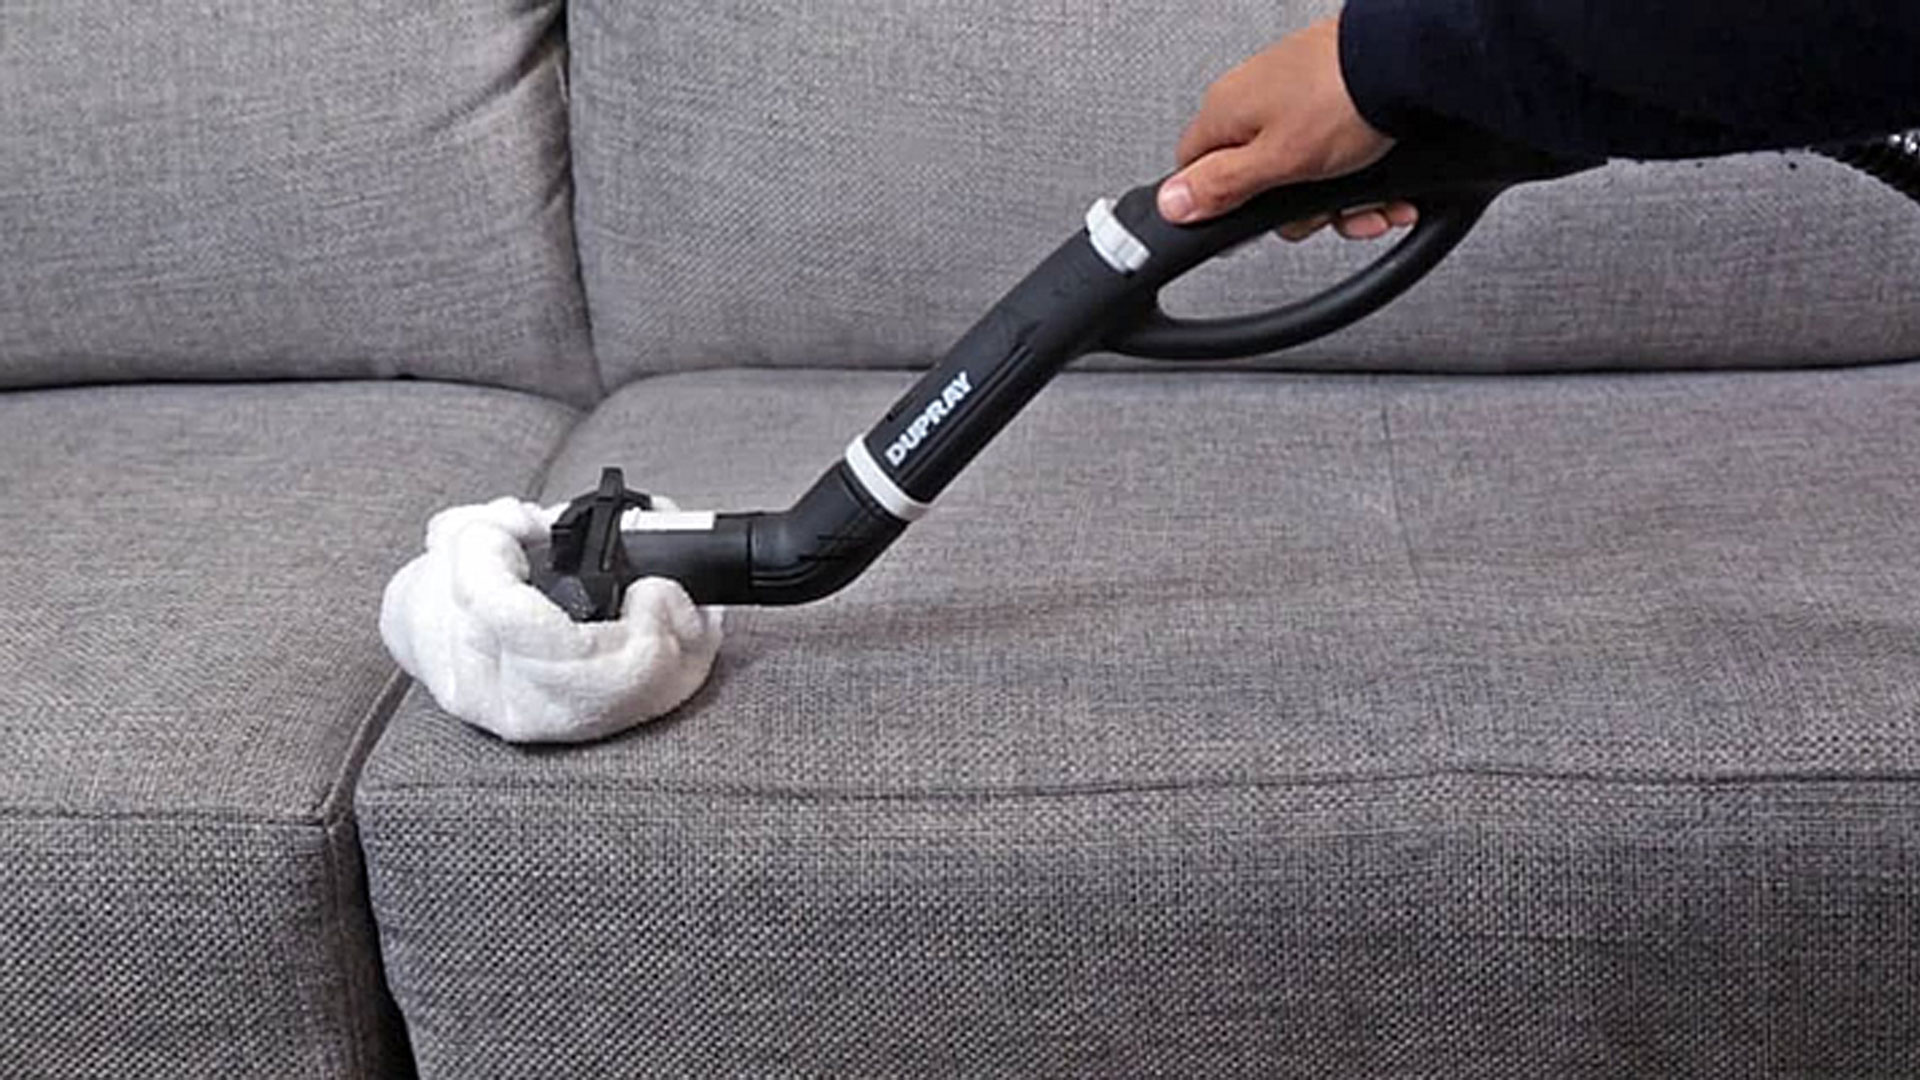 Limpiar sofa con vaporeta